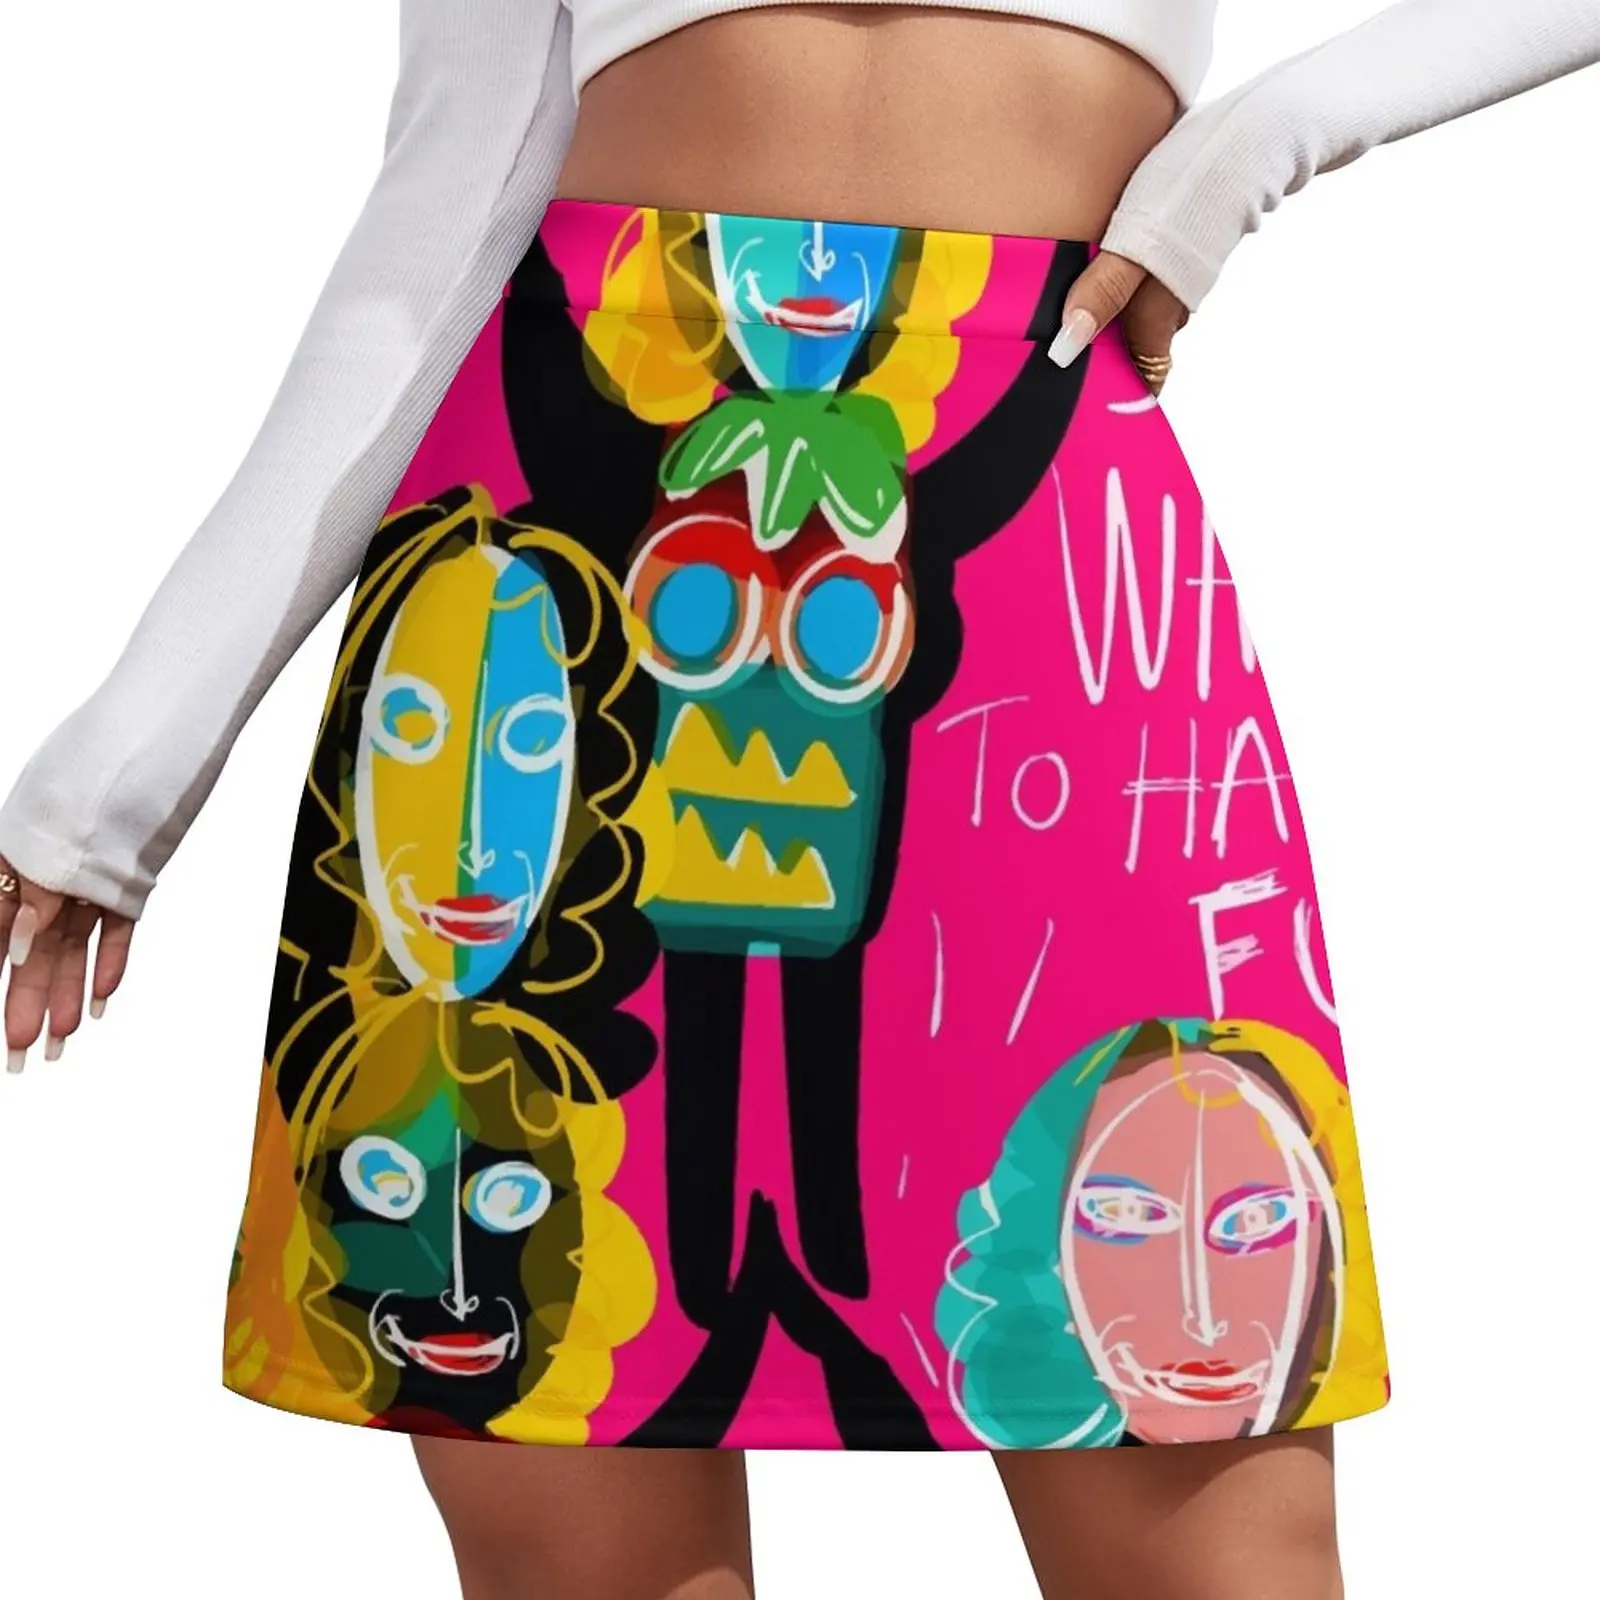 Girls just want to have fun street art graffiti Mini Skirt skorts for women kawaii clothes